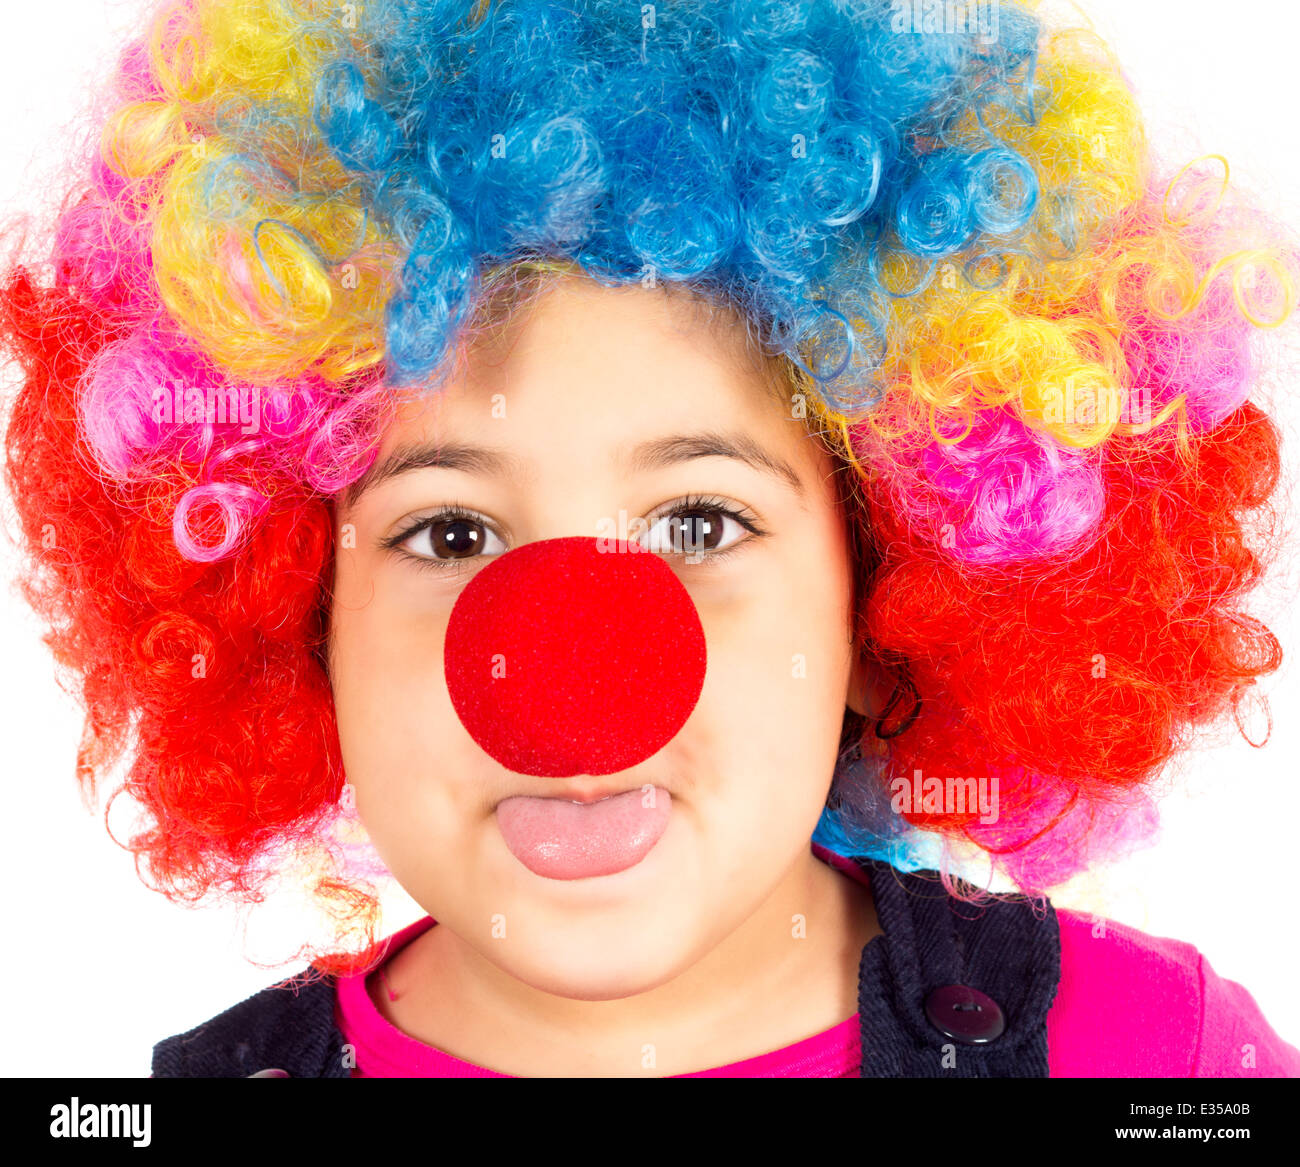 Niño gracioso payaso con peluca y nariz roja mockering Fotografía de stock  - Alamy